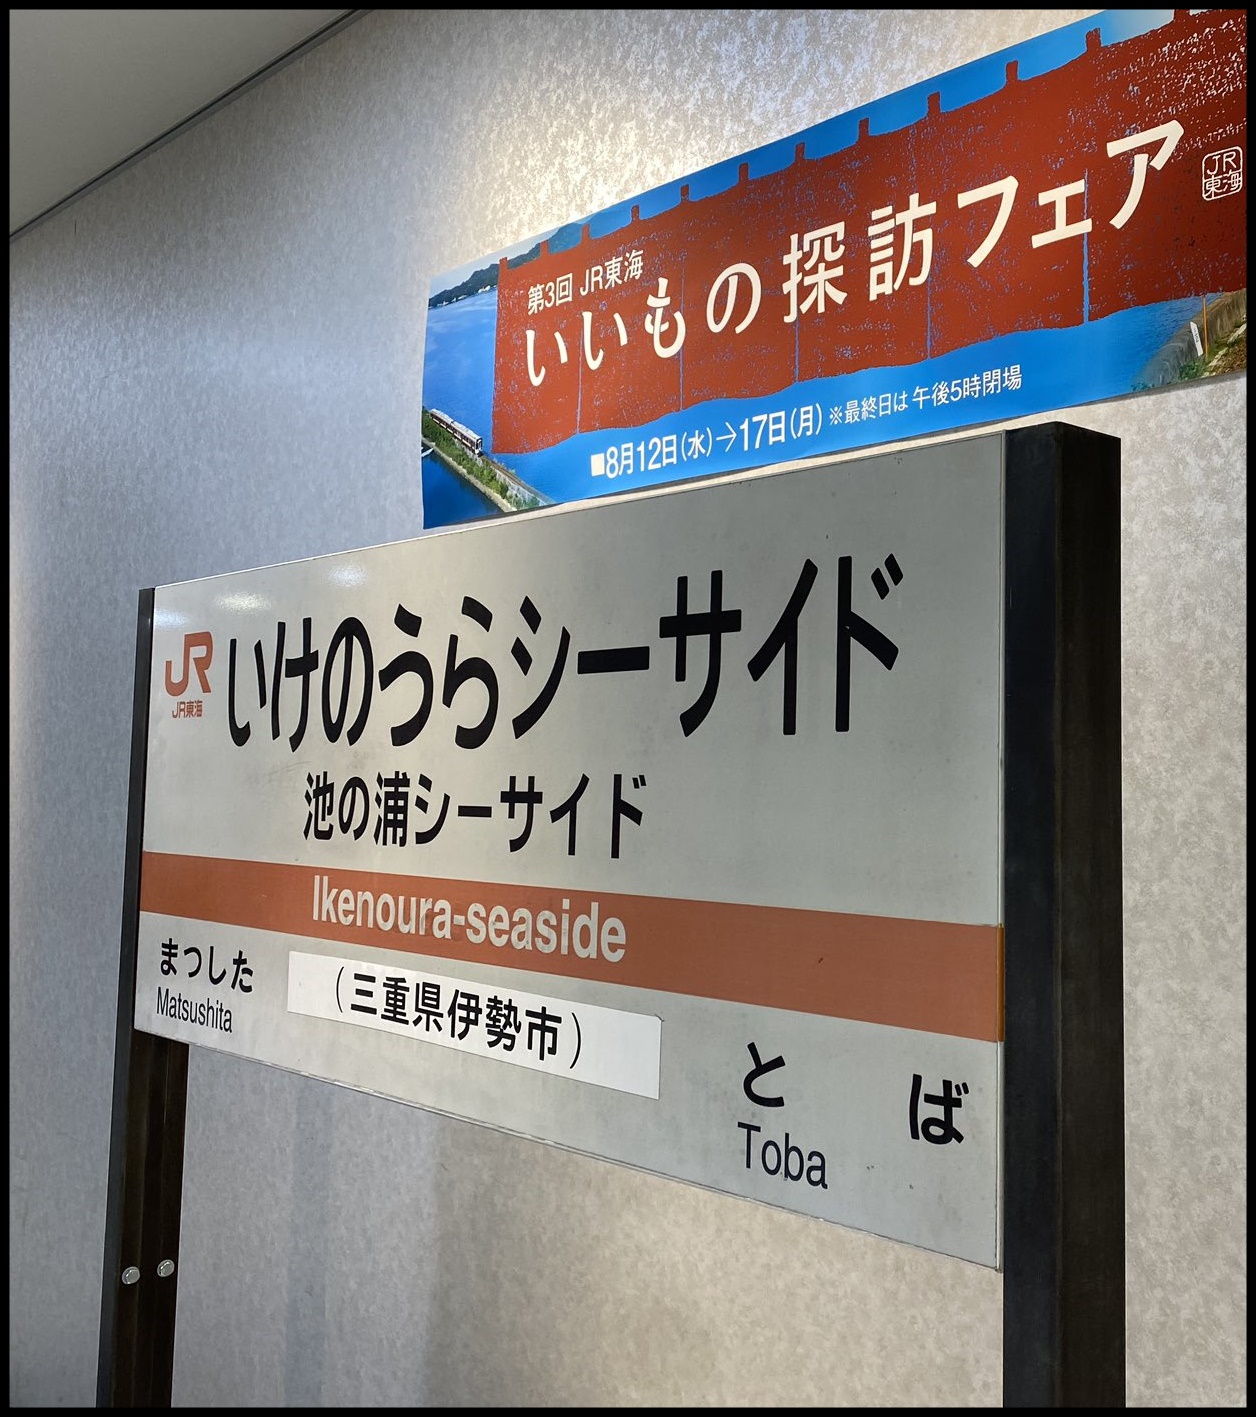 【池の浦シーサイド駅】廃止された駅名標がJR名古屋駅タカシマヤに展示される